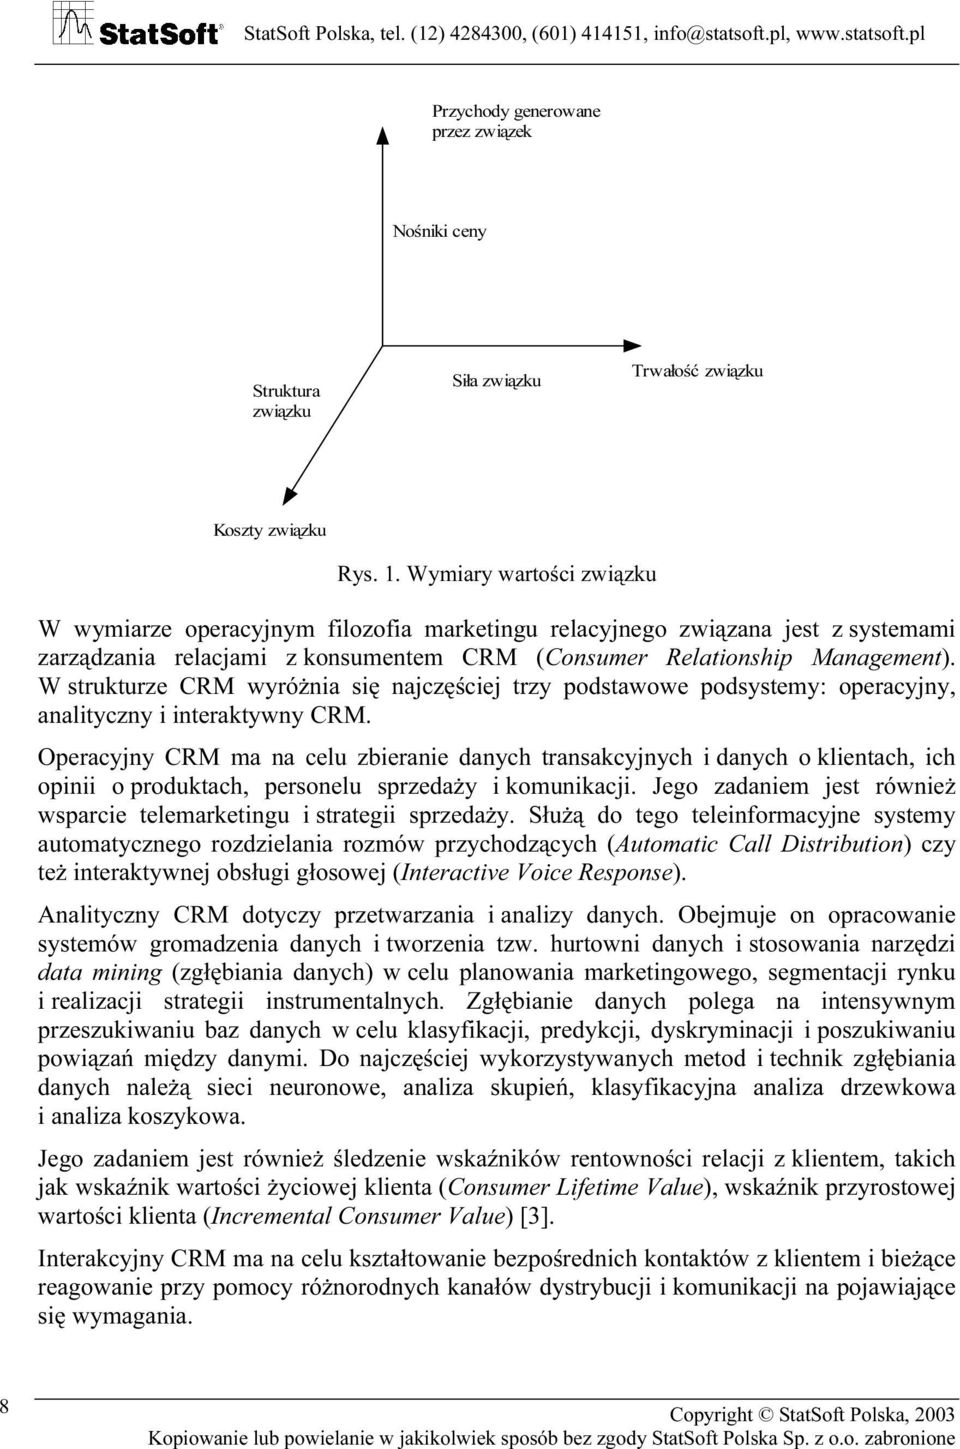 W strukturze CRM wyróżnia się najczęściej trzy podstawowe podsystemy: operacyjny, analityczny i interaktywny CRM.